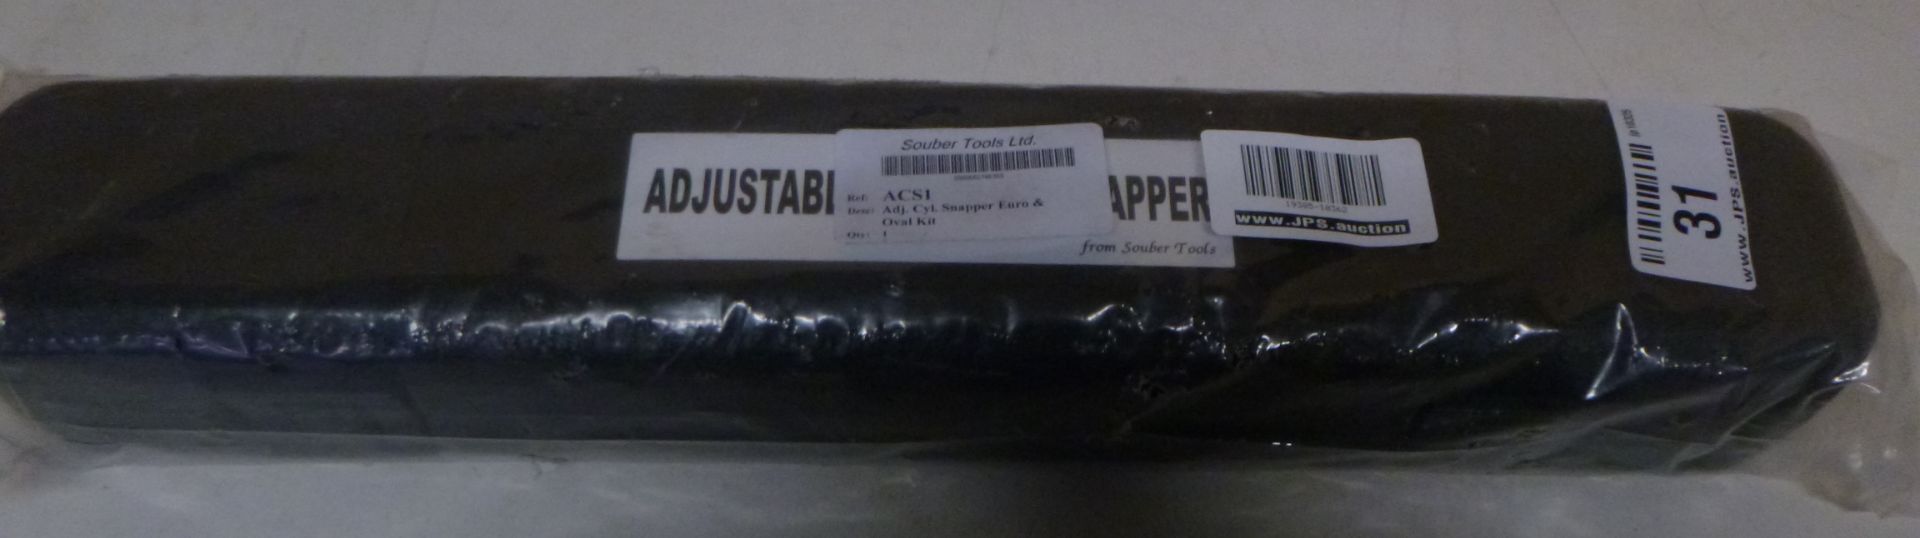 1 x Souber adjustable cylinder snapper | EAN: 5060082786365 | RRP £120 - Image 2 of 2